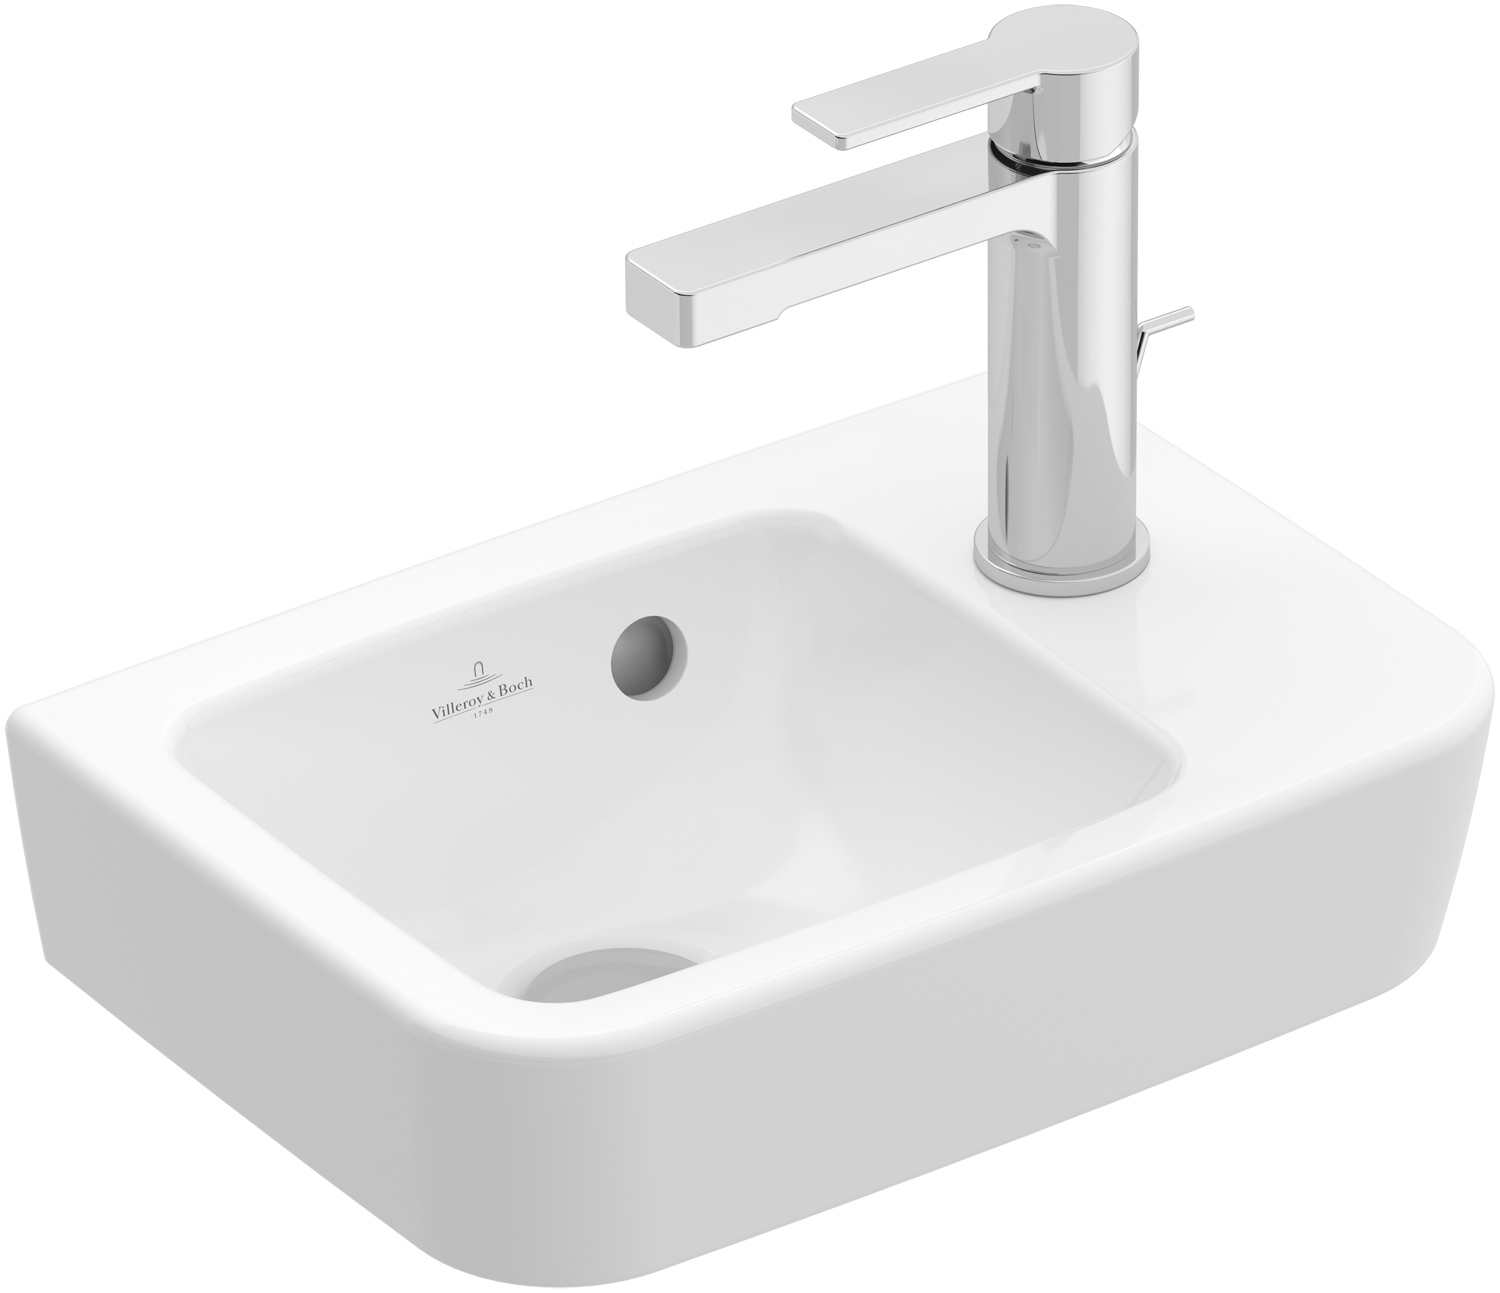 Handwaschbecken Compact O.novo 434337, 360 x 250 mm, Eckig, Becken links, 1HL. Hahnloch rechts durchgestochen, ohne Überlauf, Weiß Alpin